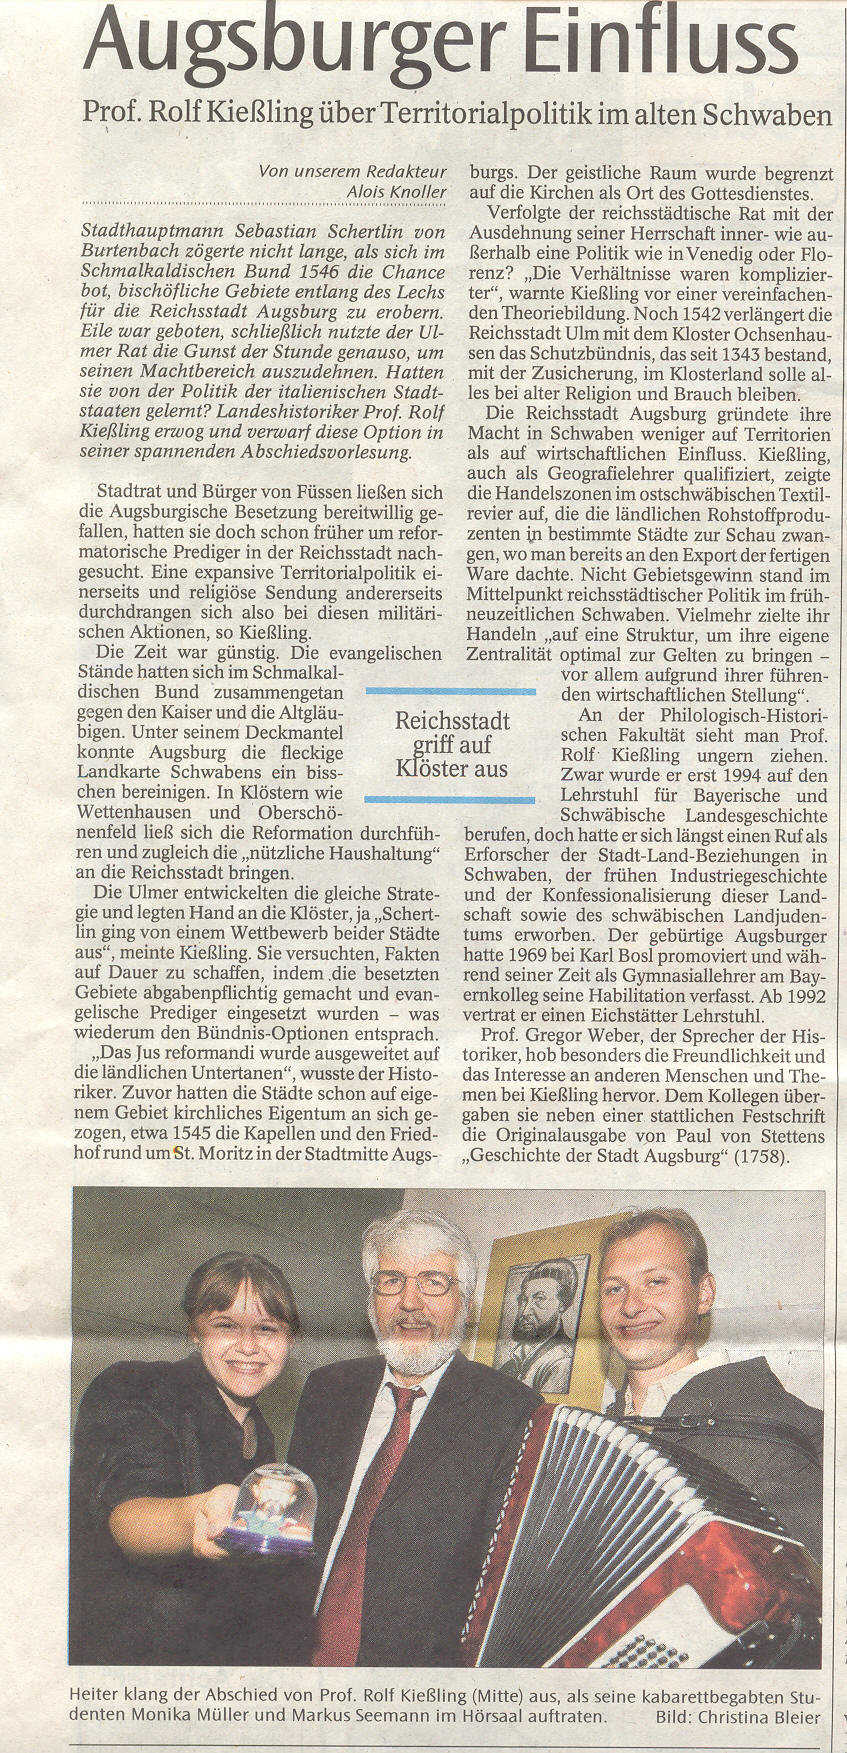 Augsburger Allgemeine 28-Jul-2006 Seite 24